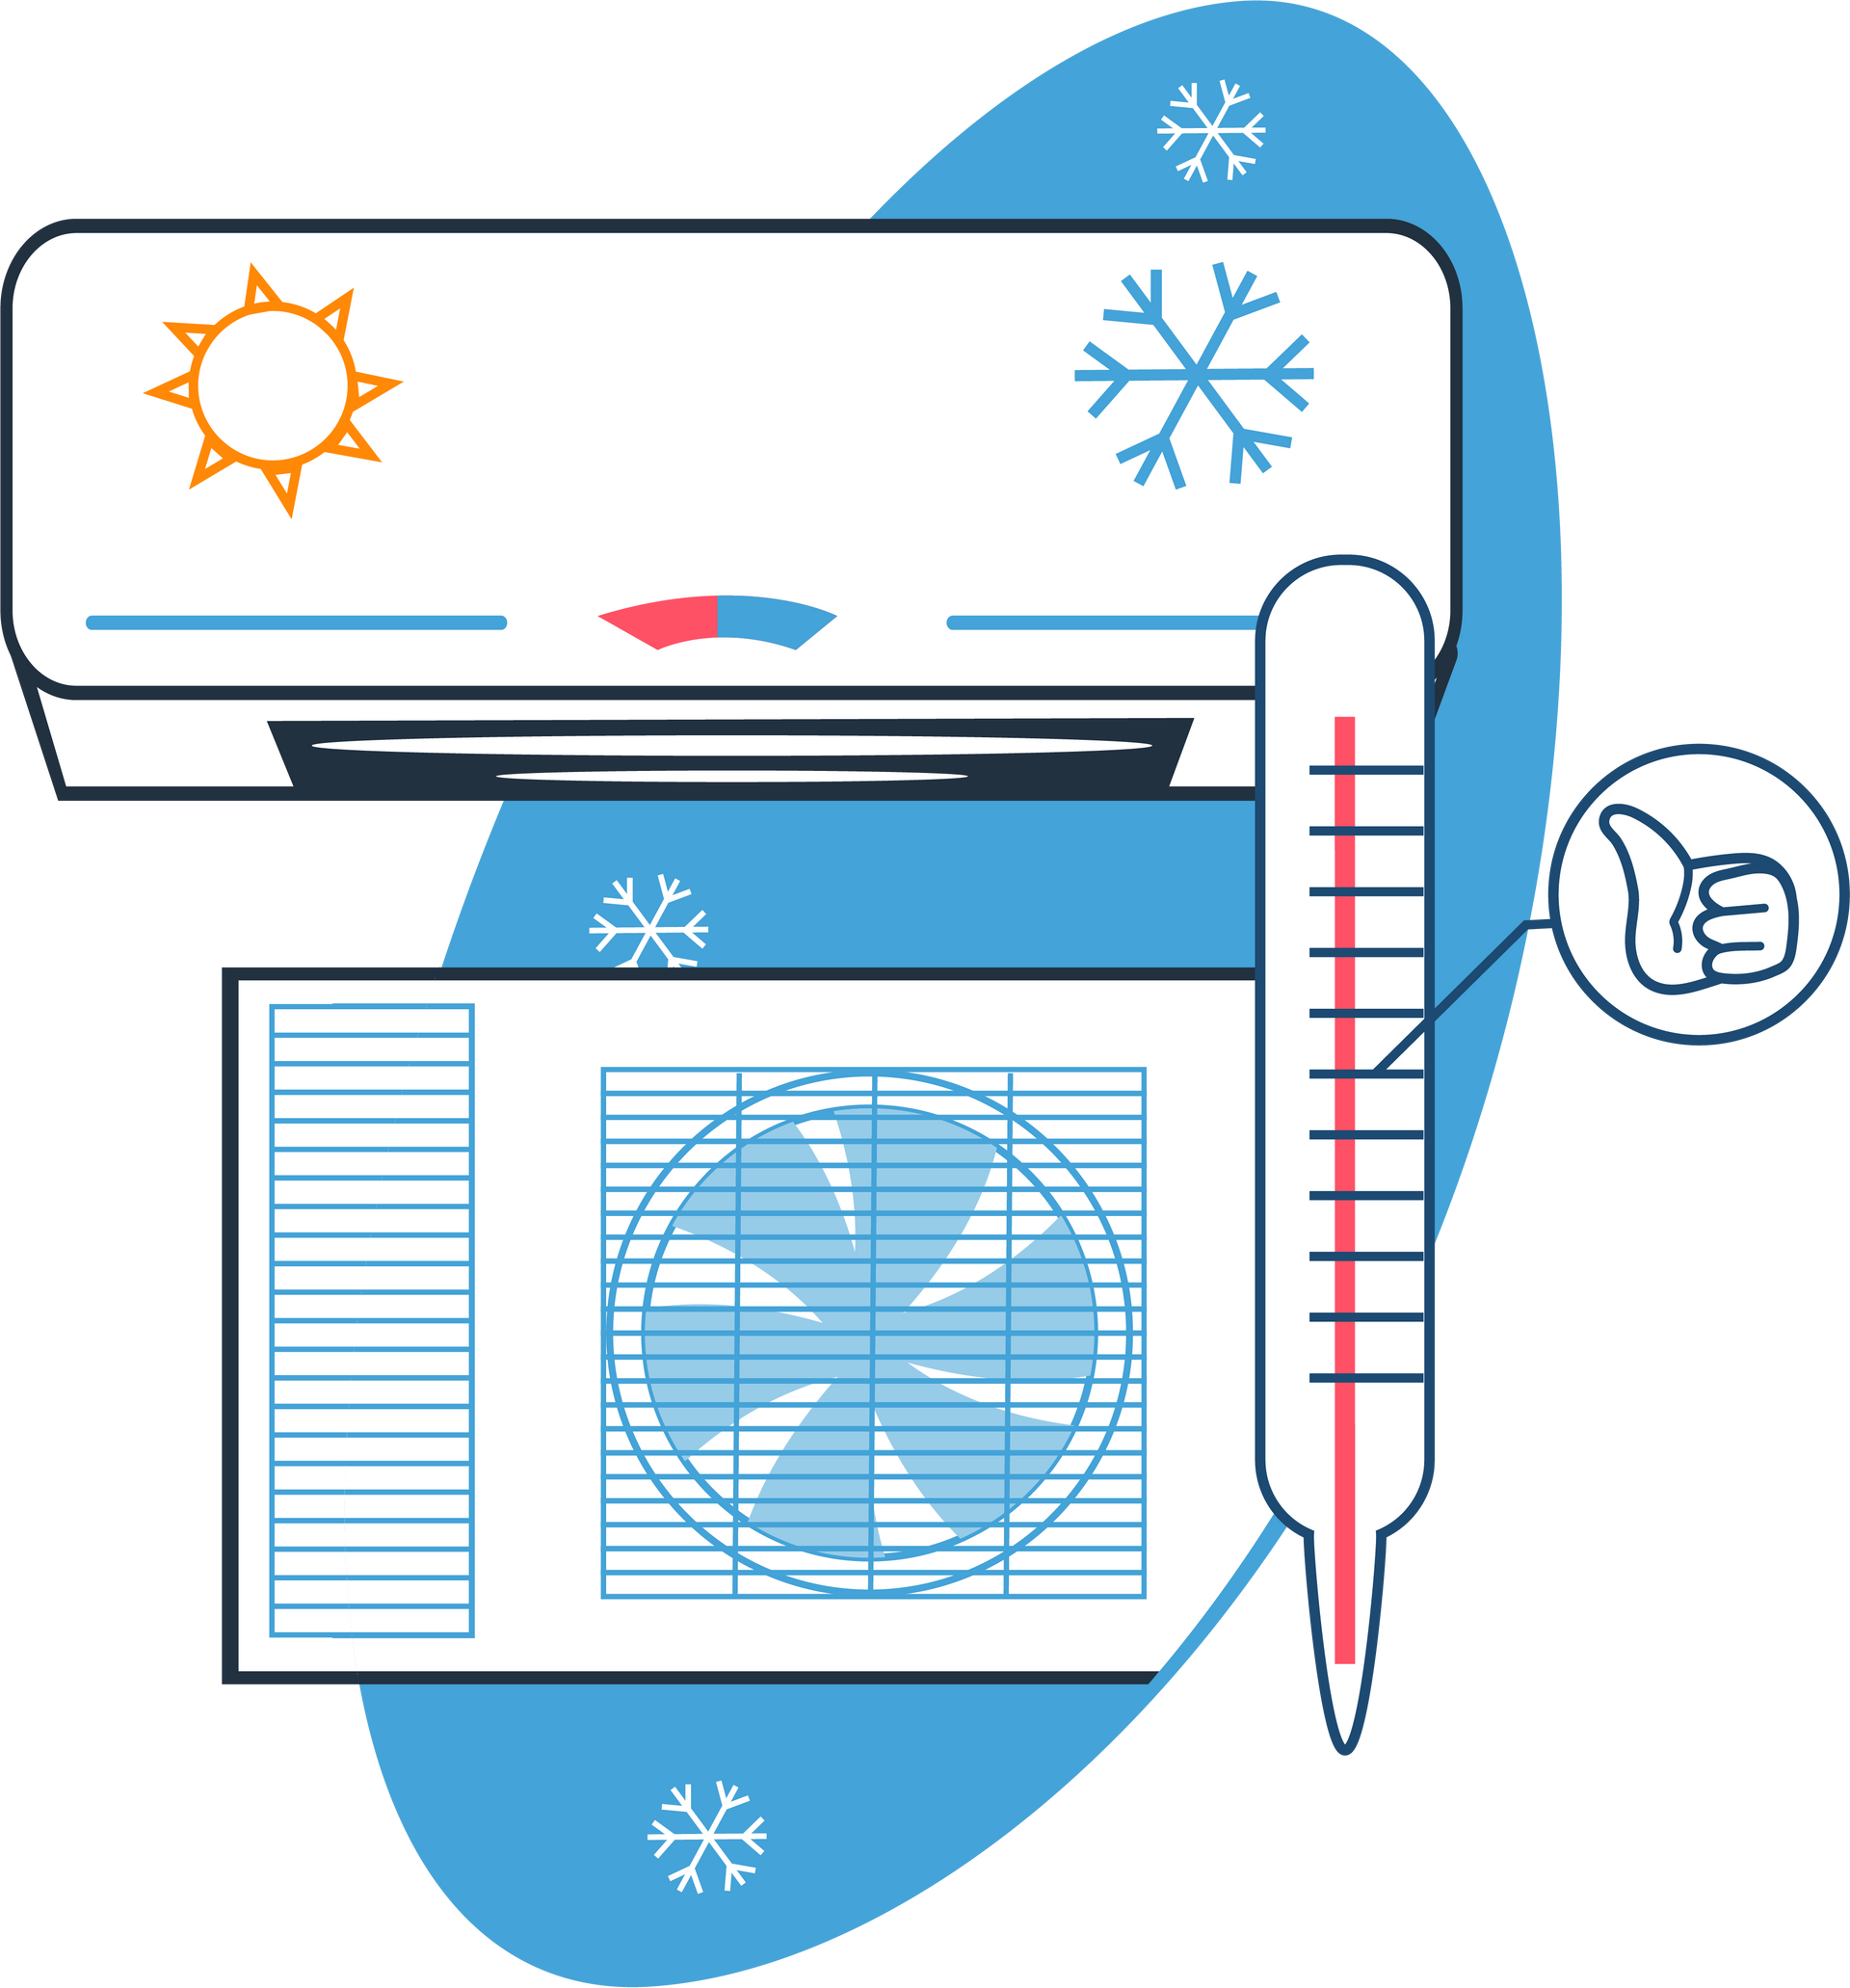 Systèmes de chauffage et climatisation en dessin - Page Chambre froide